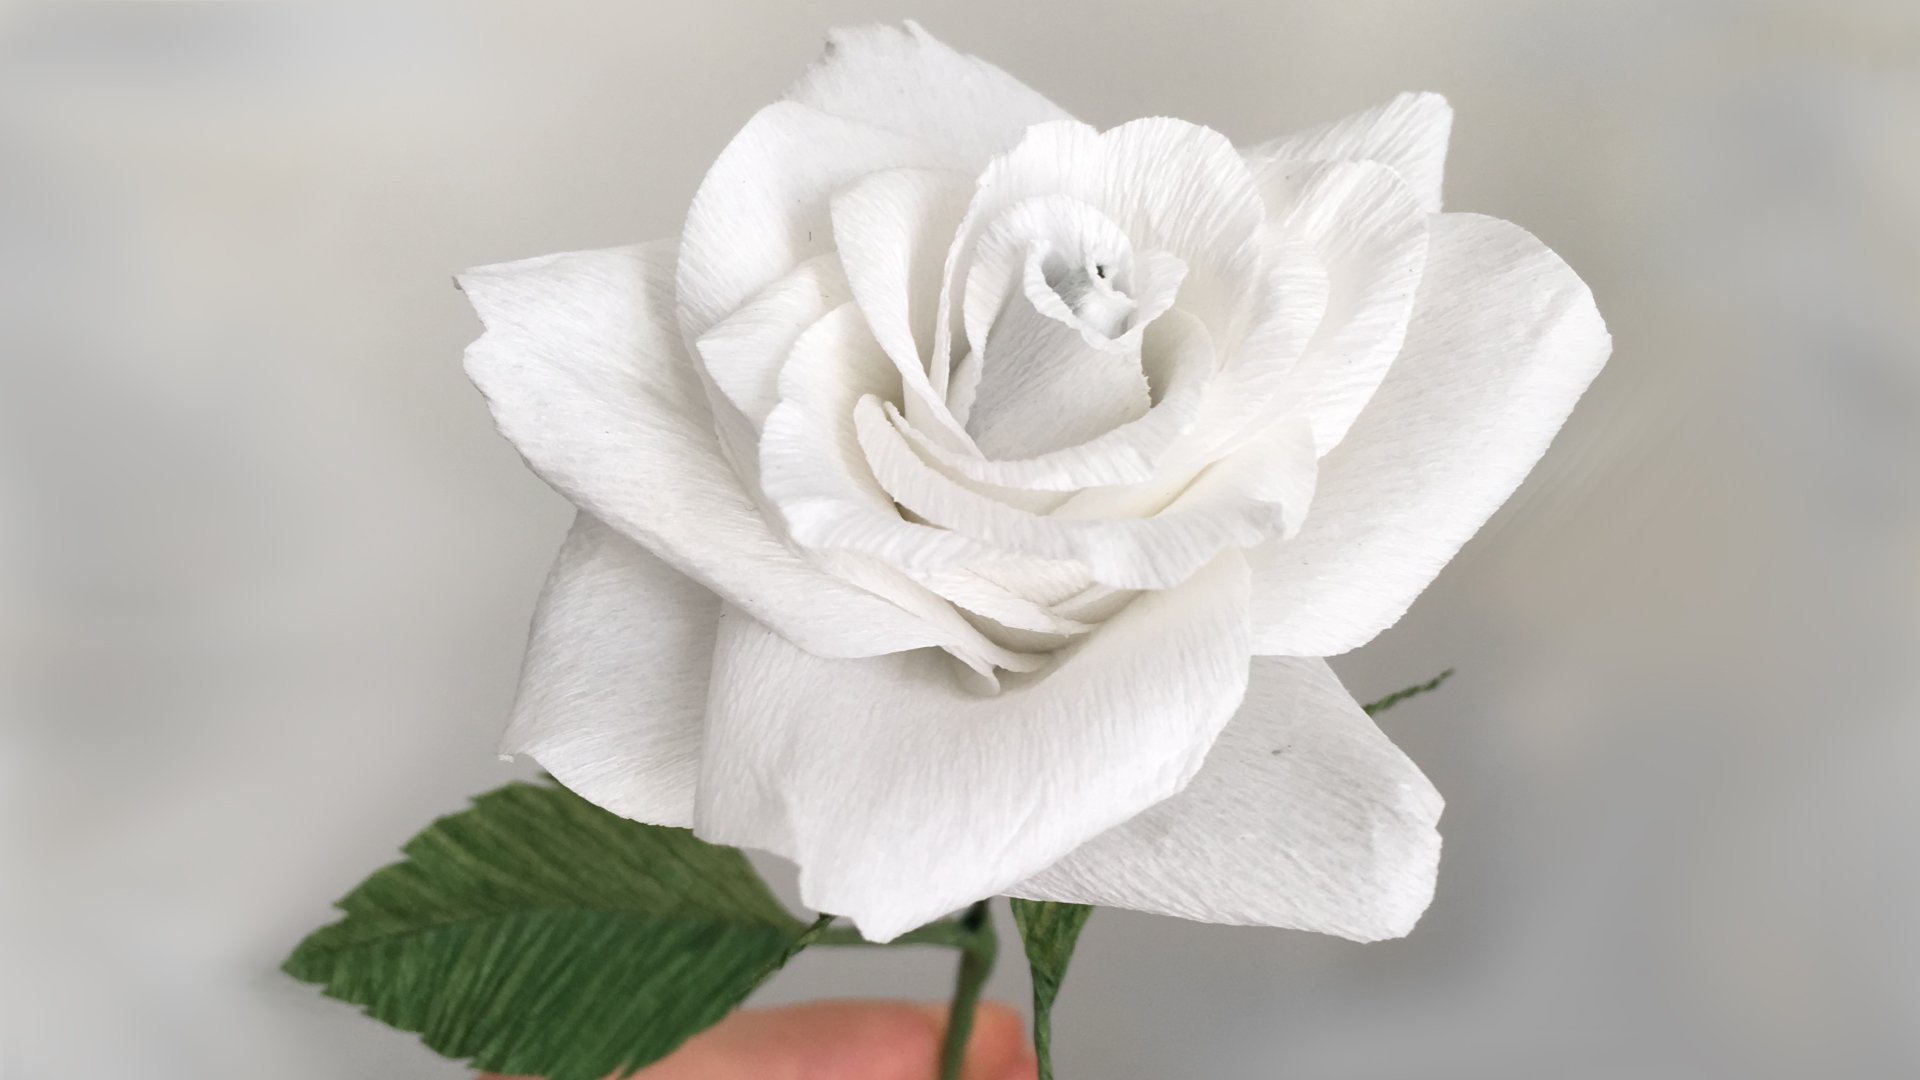 آموزش یک گل رز کاغذی واقعی بسازید